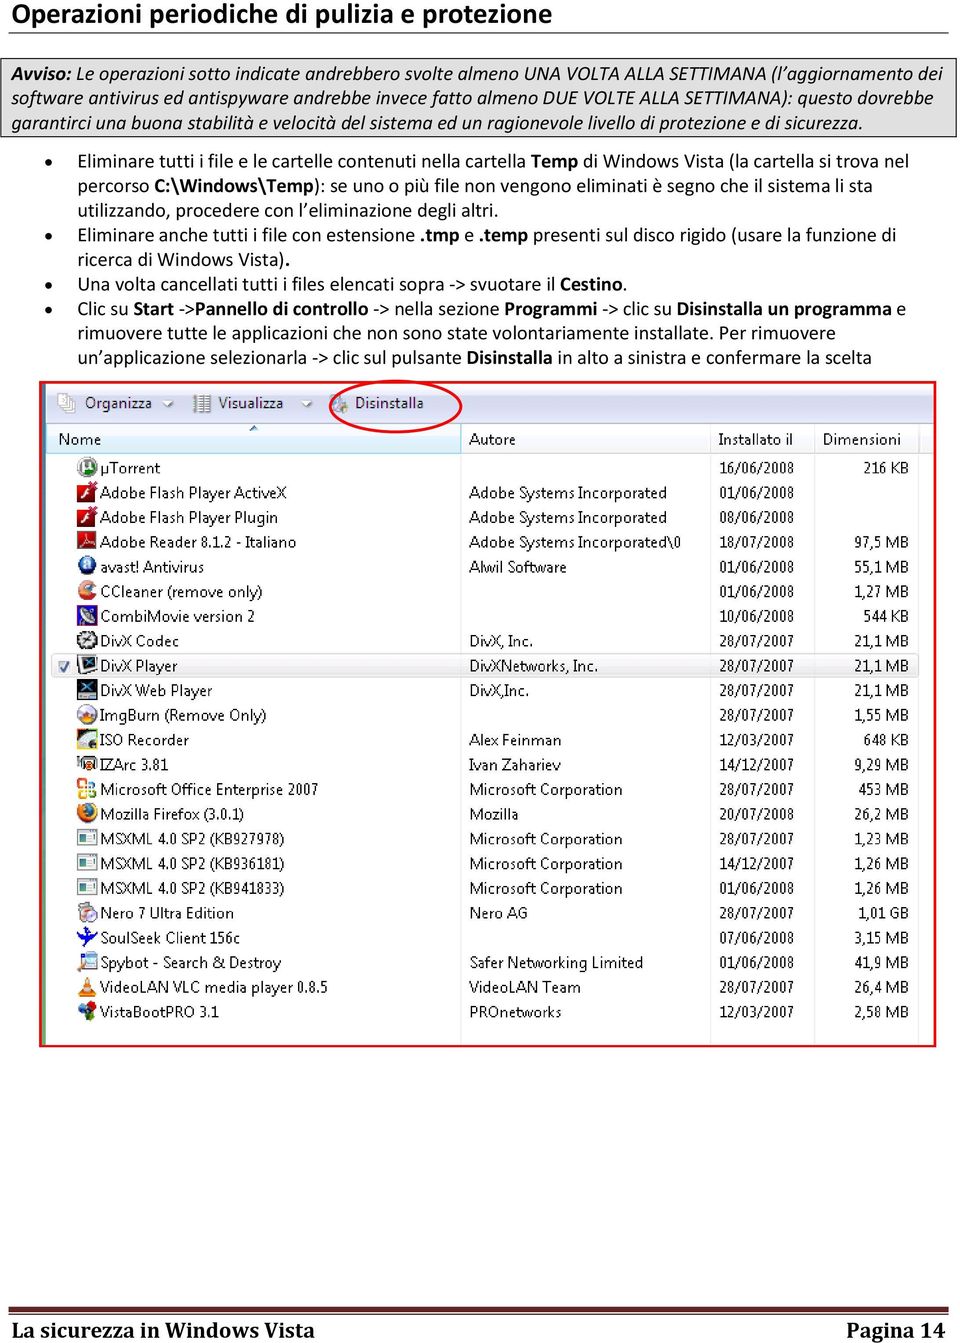 Eliminare tutti i file e le cartelle contenuti nella cartella Temp di Windows Vista (la cartella si trova nel percorso C:\Windows\Temp): se uno o più file non vengono eliminati è segno che il sistema